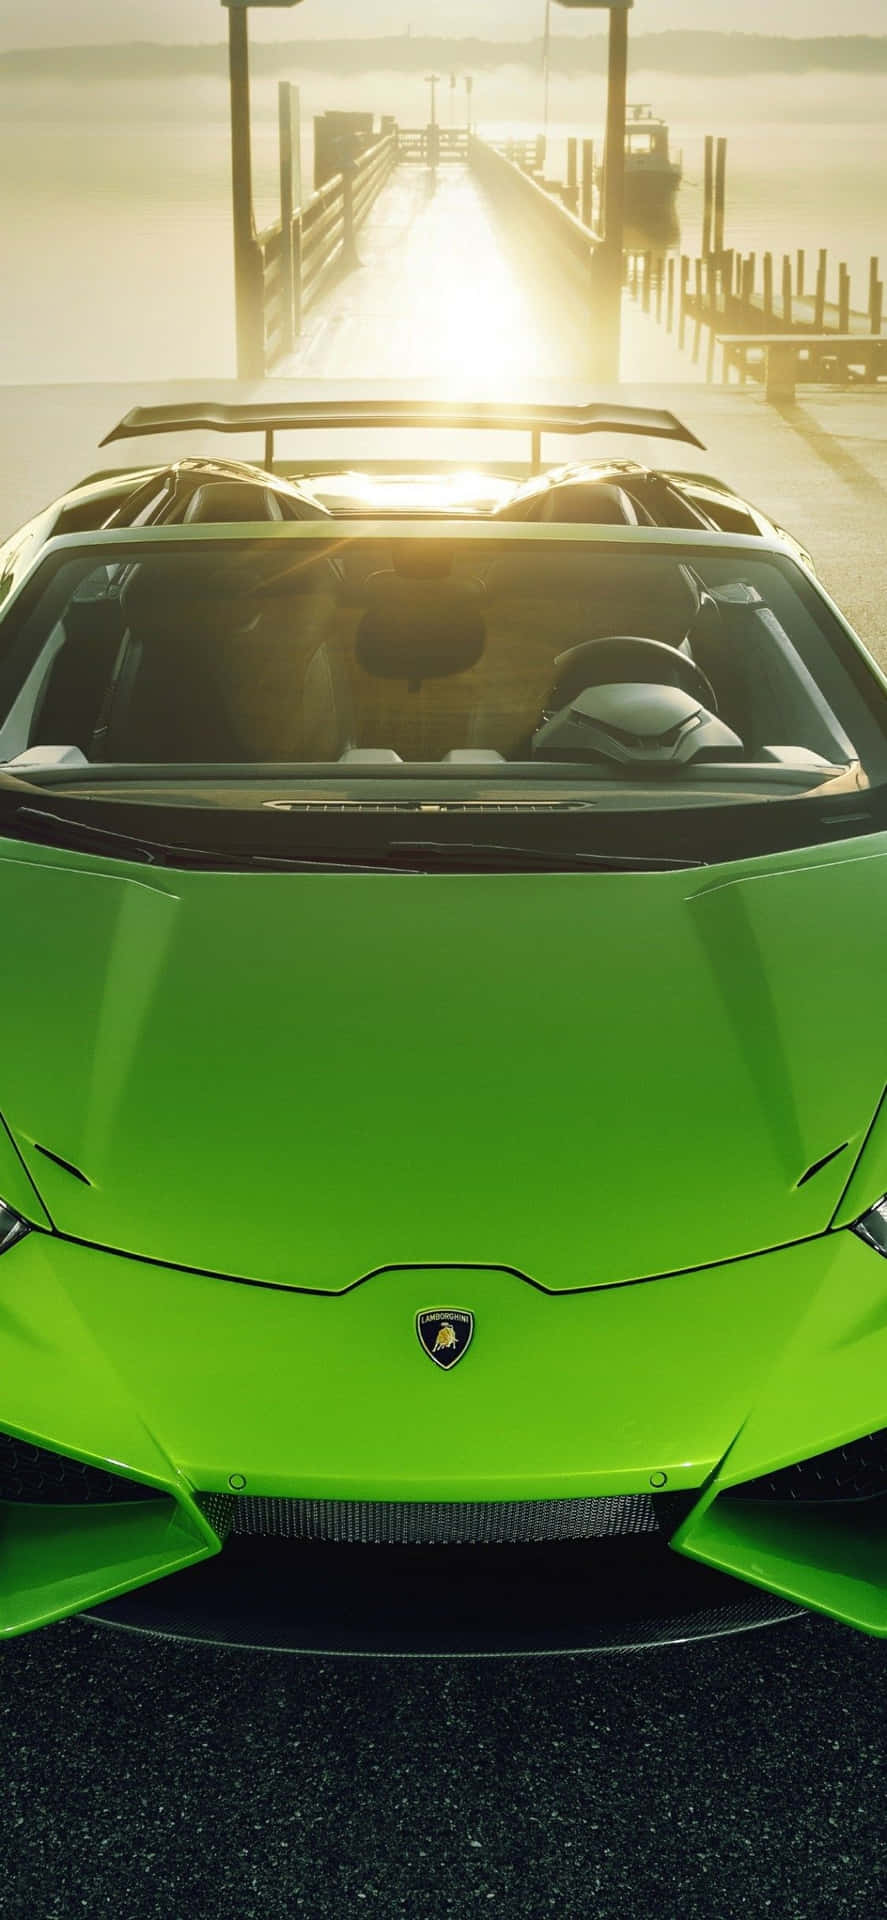 Erreichensie Neue Höhen Mit Dem Limitierten Grünen Lamborghini Iphone. Wallpaper